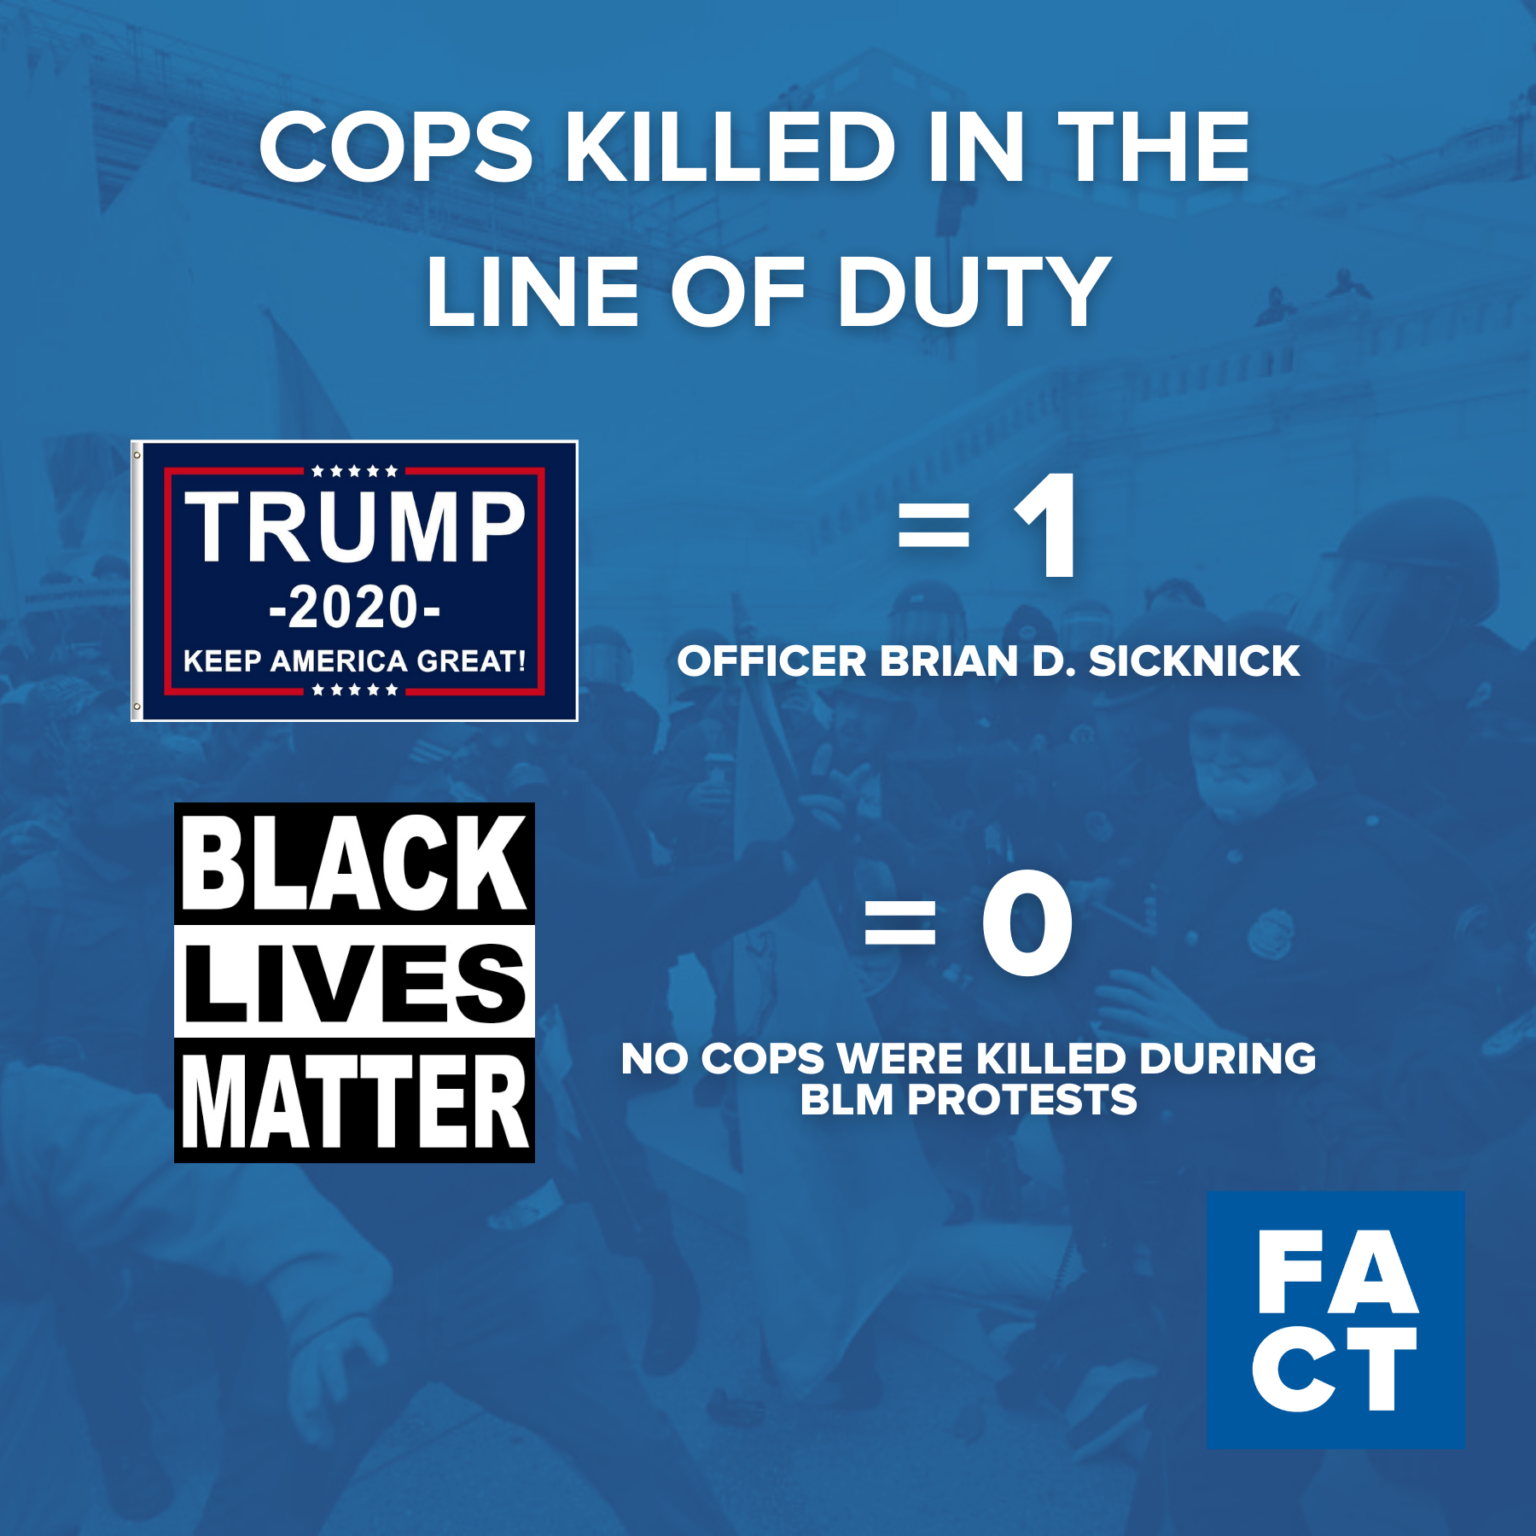 Trump'ın İsyanı, Siyahların Hayatı Önemlidir Protestolarından Daha Fazla Polis Memurunu Öldürdü